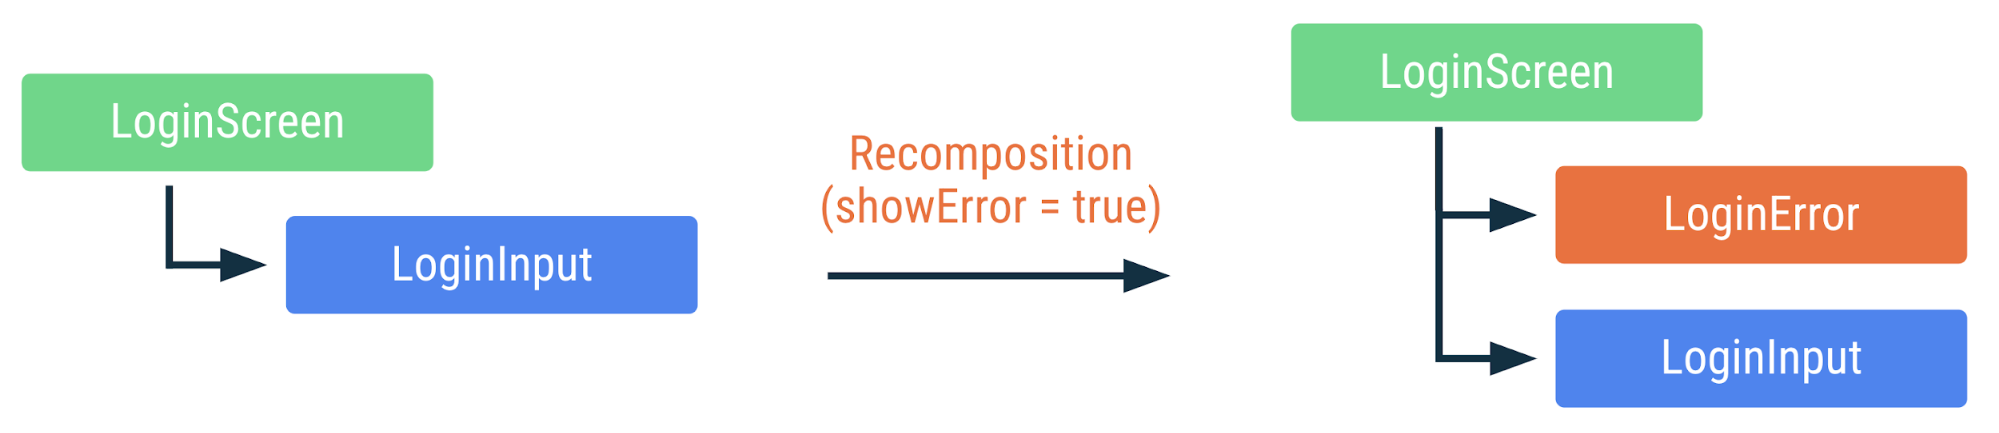 showError işareti doğru olarak değiştirildiğinde önceki kodun nasıl yeniden derleneceğini gösteren şema. LoginError composable eklendi, ancak diğer composable&#39;lar yeniden oluşturulmadı.